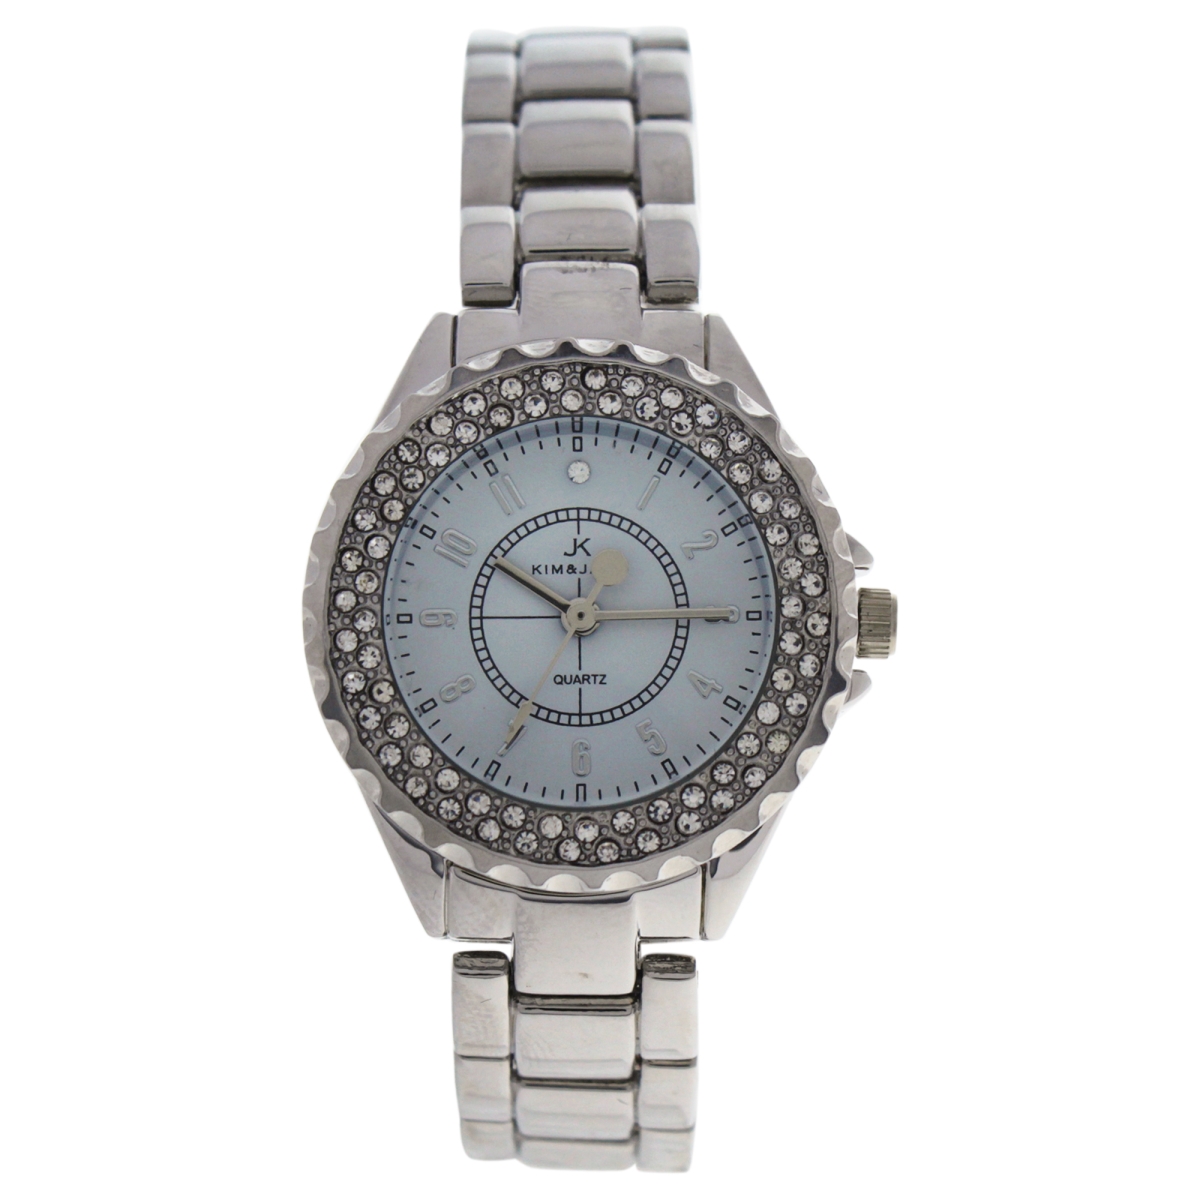 W-wat-1499 Silver Stainless Steel Bracelet Watch For Women - 2033l-sw